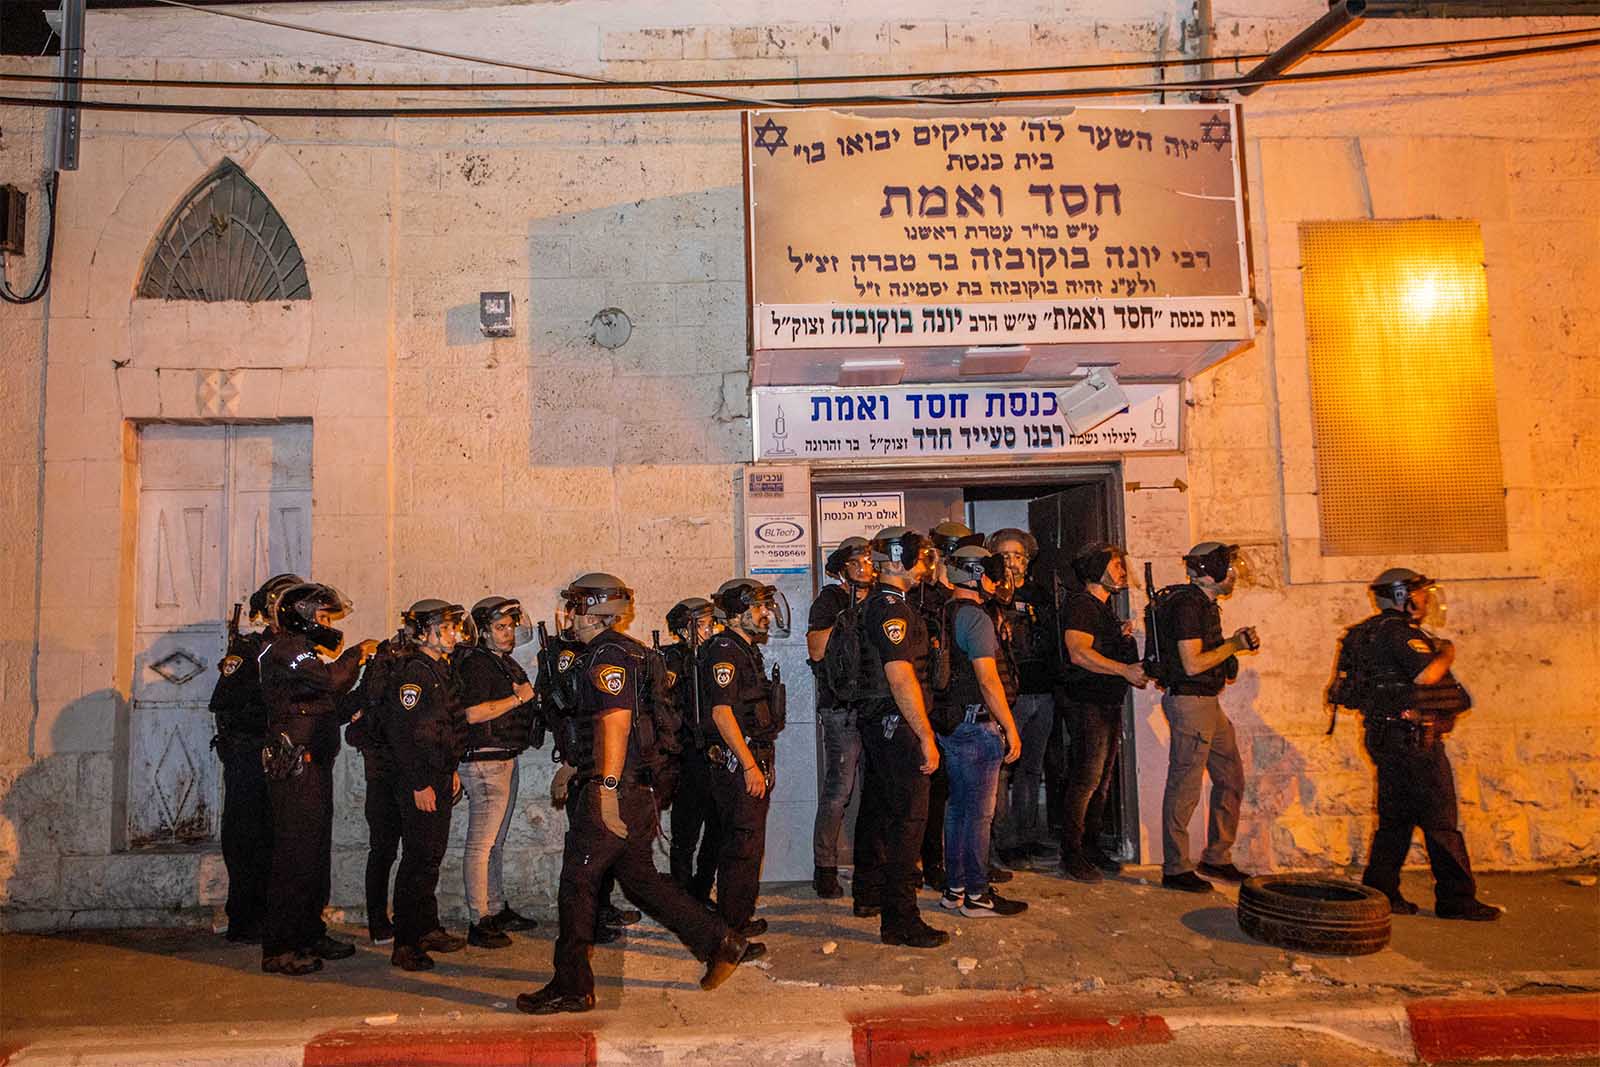 שוטרים מאבטחים את בית הכנסת 'חסד ואמת' ברמלה שהושחת במהלך הפגנות אלימות בעיר (צילום: יוסי אלוני/פלאש90)